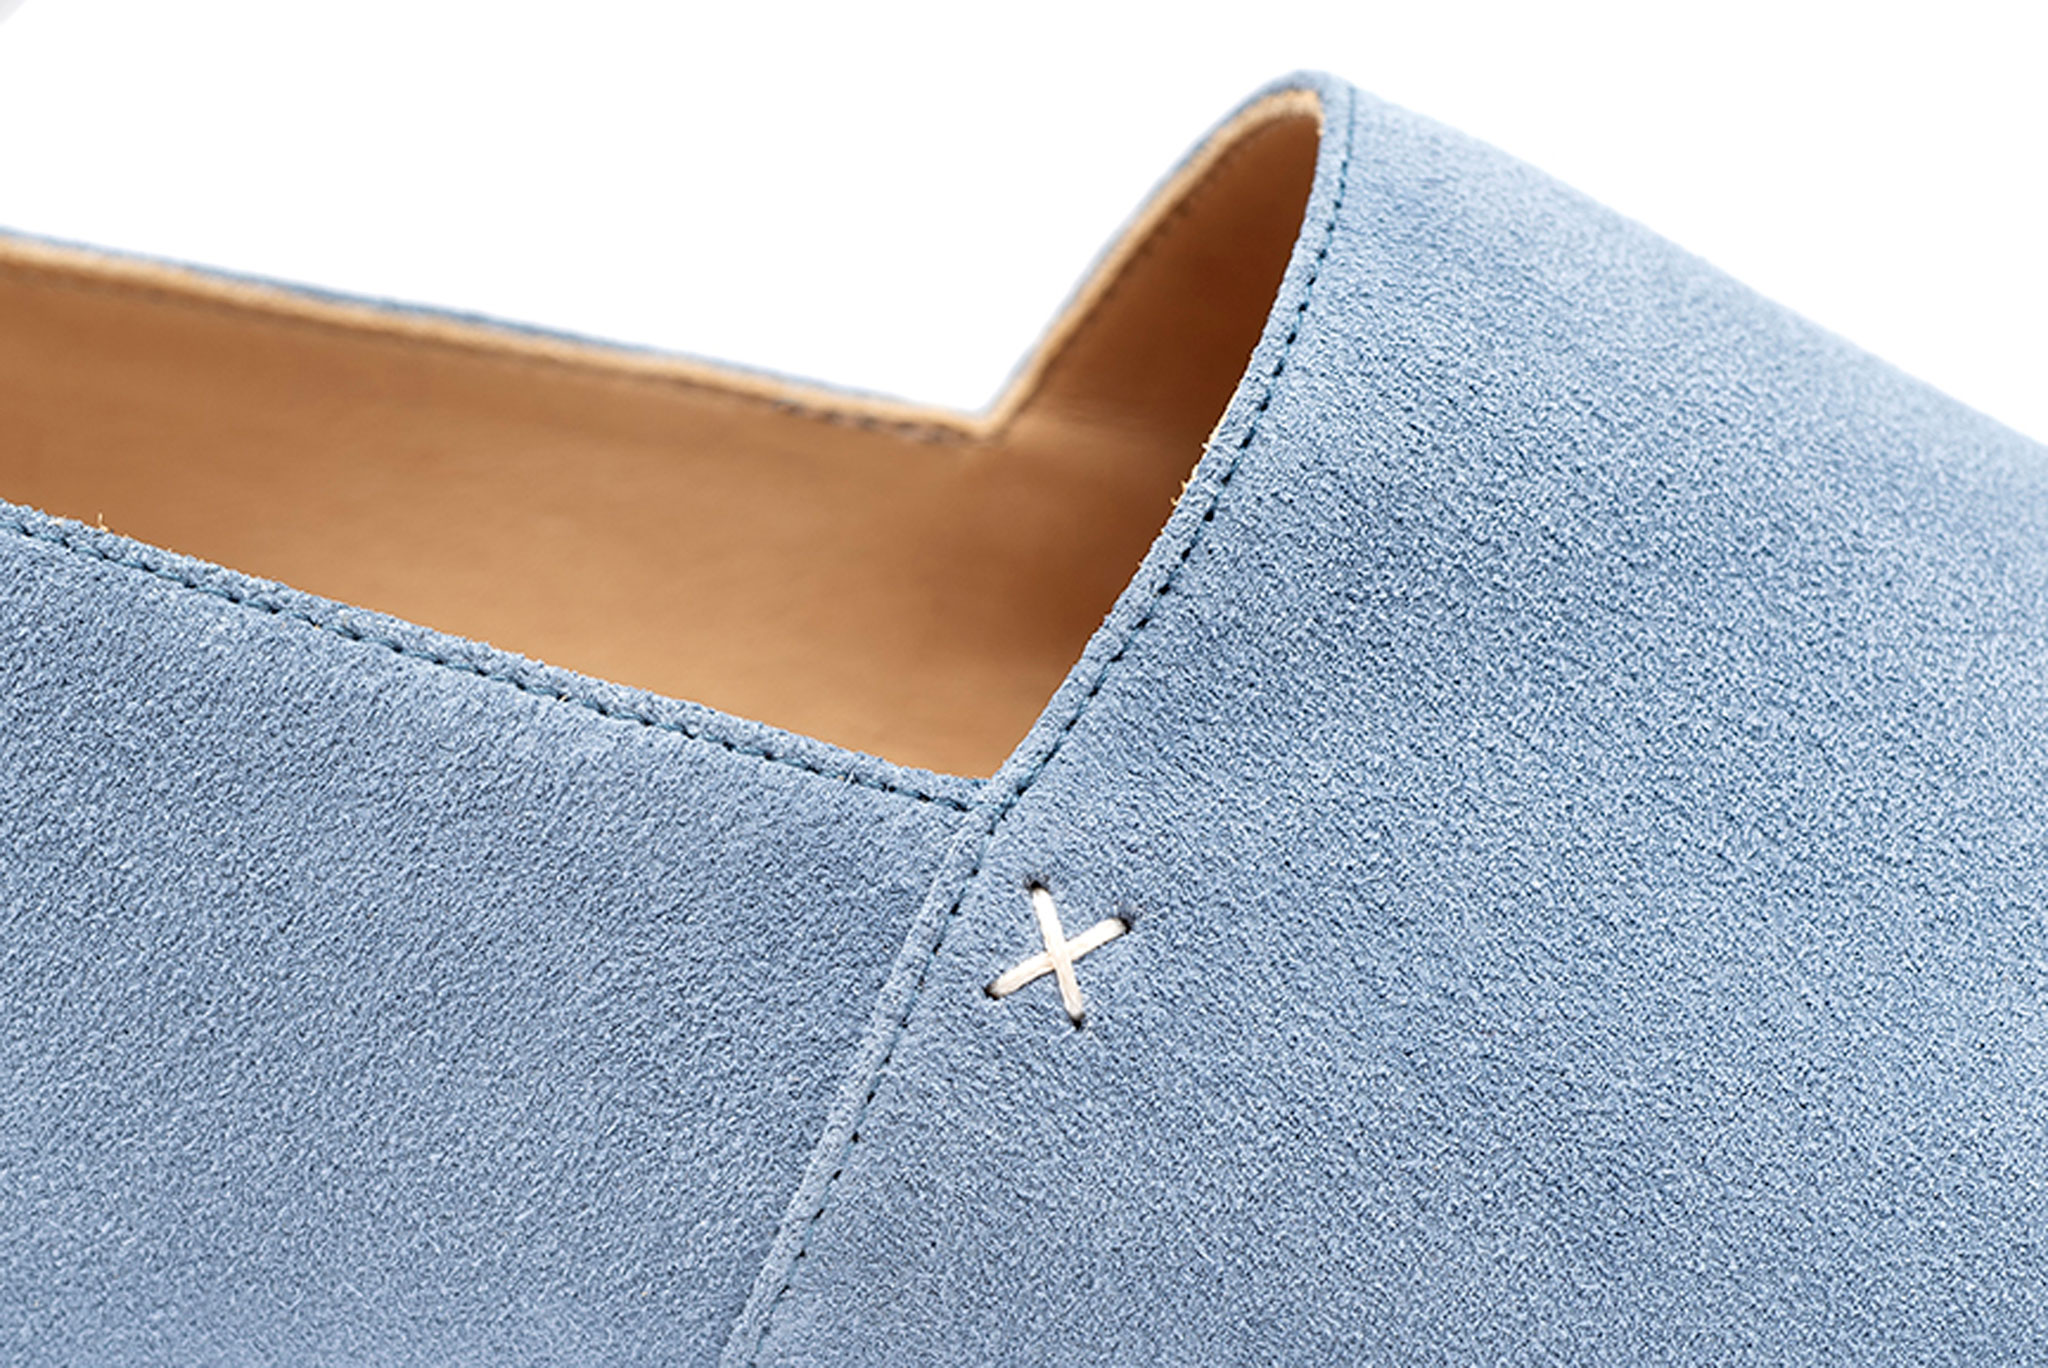 Louis Vuitton Men's Blue Suede/Leather Lace Up Shoes Size 7